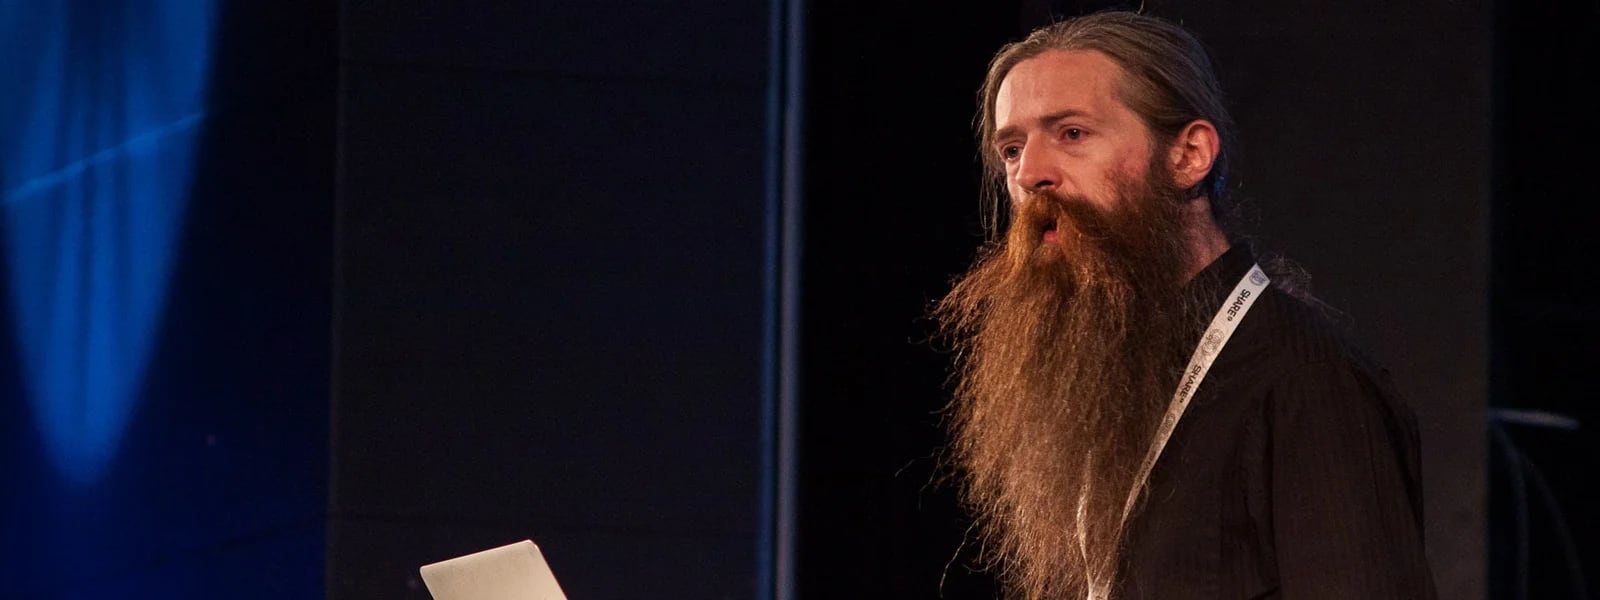 Aubrey de Grey cree que la prevención no detiene el envejecimiento: su enfoque se basa en la reparación